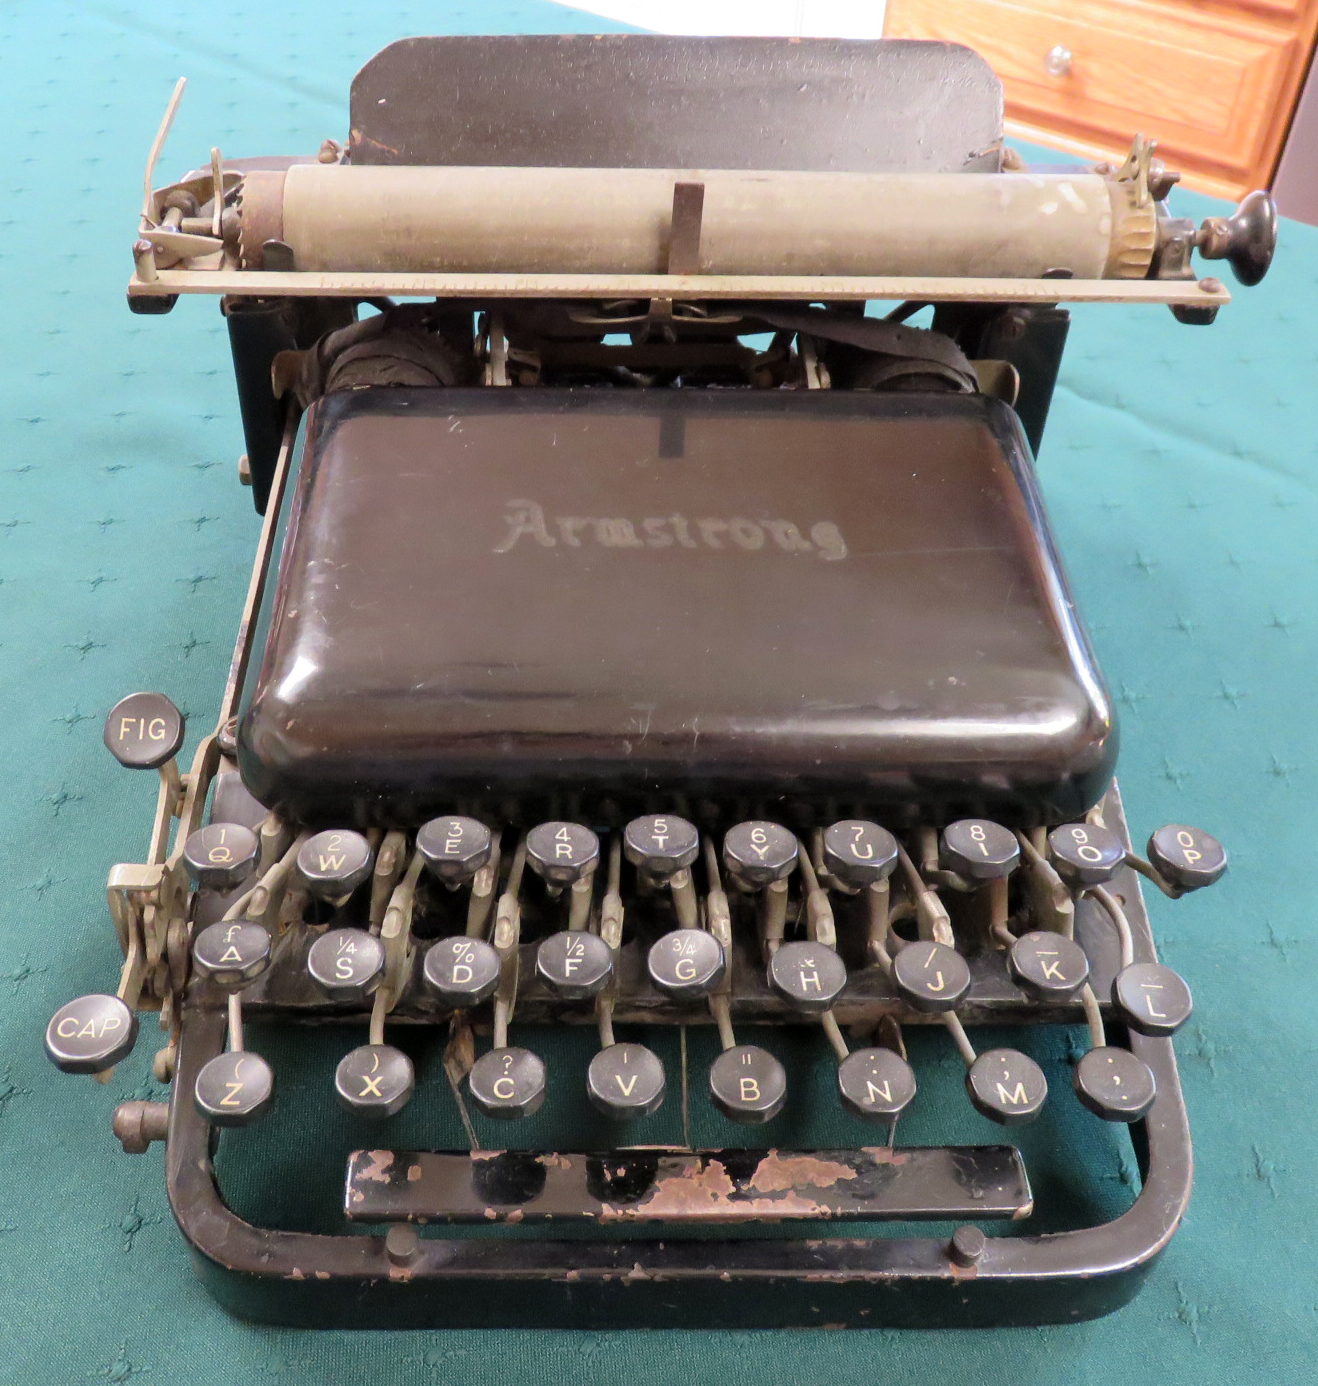 Armstrong Typewriter 1901